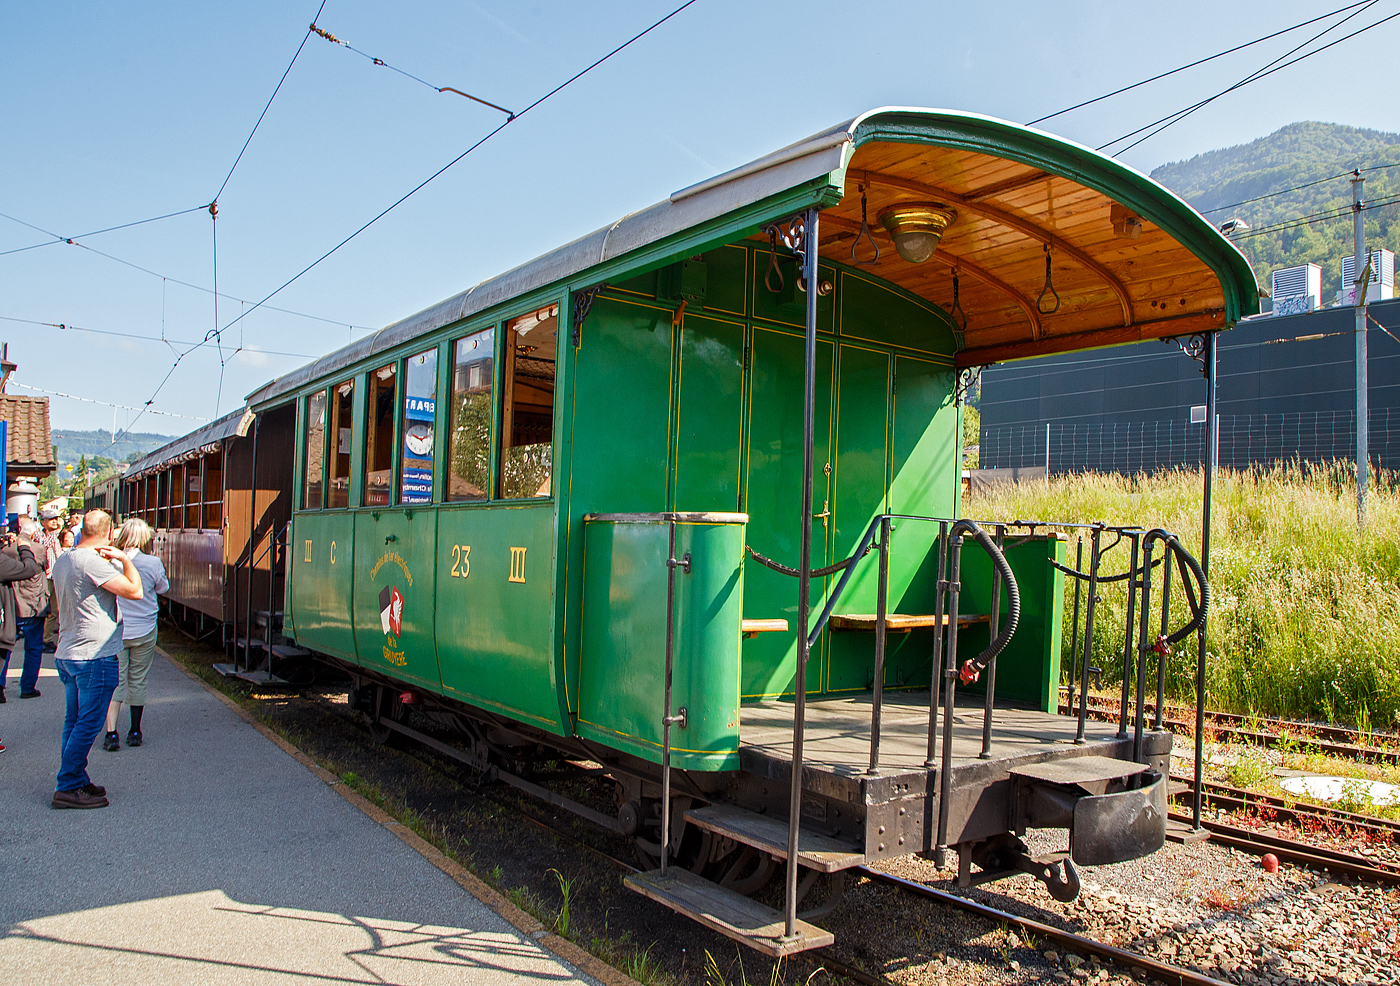 Der zweiachsige 3. Klasse Personenwagen mit offenen Plattformen (Plattformwagen) ex CEG C 23 (Chemins de fer Electriques de la Gruyre, ab 1942 GFM - Chemins de fer fribourgeois Gruyre–Fribourg–Morat) der Museumsbahn Blonay-Chamby am 27.05.2023 im Zugverband im Bahnhof Blonay.

Der Wagen wurde 1903 von der SWS (Schweizerische Wagons- und Aufzgefabrik AG, Schlieren) fr die Chemins de fer lectriques de la Gruyre (CEG) gebaut und als CEG C 23 geliefert. Im Jahr 1967 ging der Wagen an die Museumsbahn Blonay-Chamby.

Die Chemins de fer lectriques de la Gruyre schloss sich 1942 mit den beiden Normalspurbahnen FMA und BR zur GMF (Chemins de fer fribourgeois Gruyre–Fribourg–Morat) zusammen. Seit 2000 nun TPF (Transports publics fribourgeois SA / Freiburgische Verkehrsbetriebe AG).

TECHNISCHE DATEN:
Baujahr: 1903
Hersteller: SWS Schlieren (Schweizerische Wagons- und Aufzgefabrik AG)
Spurweite: 1.000 mm (Meterspur)
Achsanzahl: 2
Lnge ber Puffer: 8.900 mm
Lnge Wagenkasten: 7.900 mm (mit Plattformen)
Achsabstand: 4.300 mm
Eigengewicht: 7,3 t
Sitzpltze: 23 in der 3. Klasse